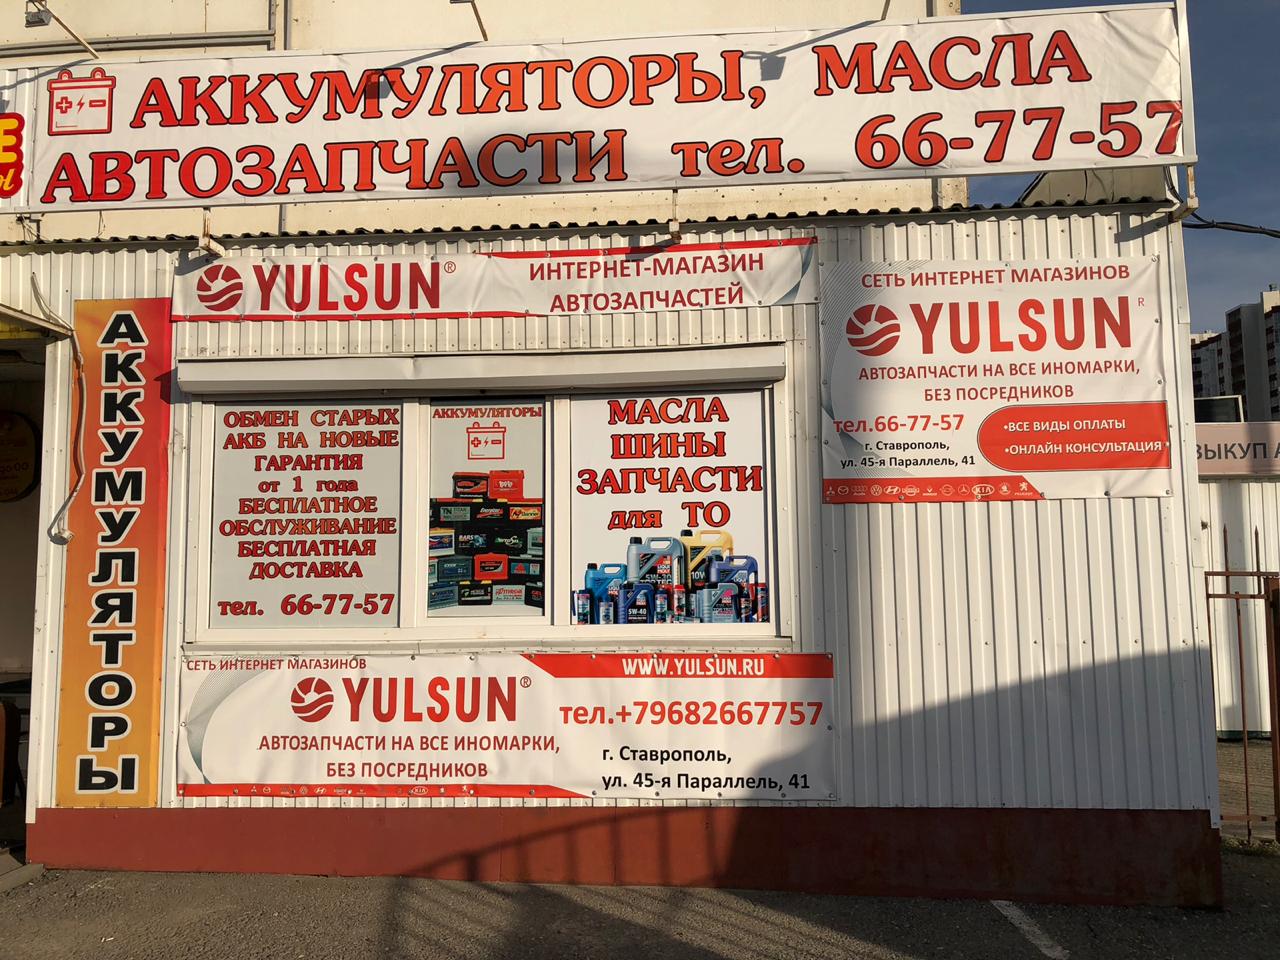 Адрес магазина где можно купить запчасти купить запчасти на москвич 412 в харькове